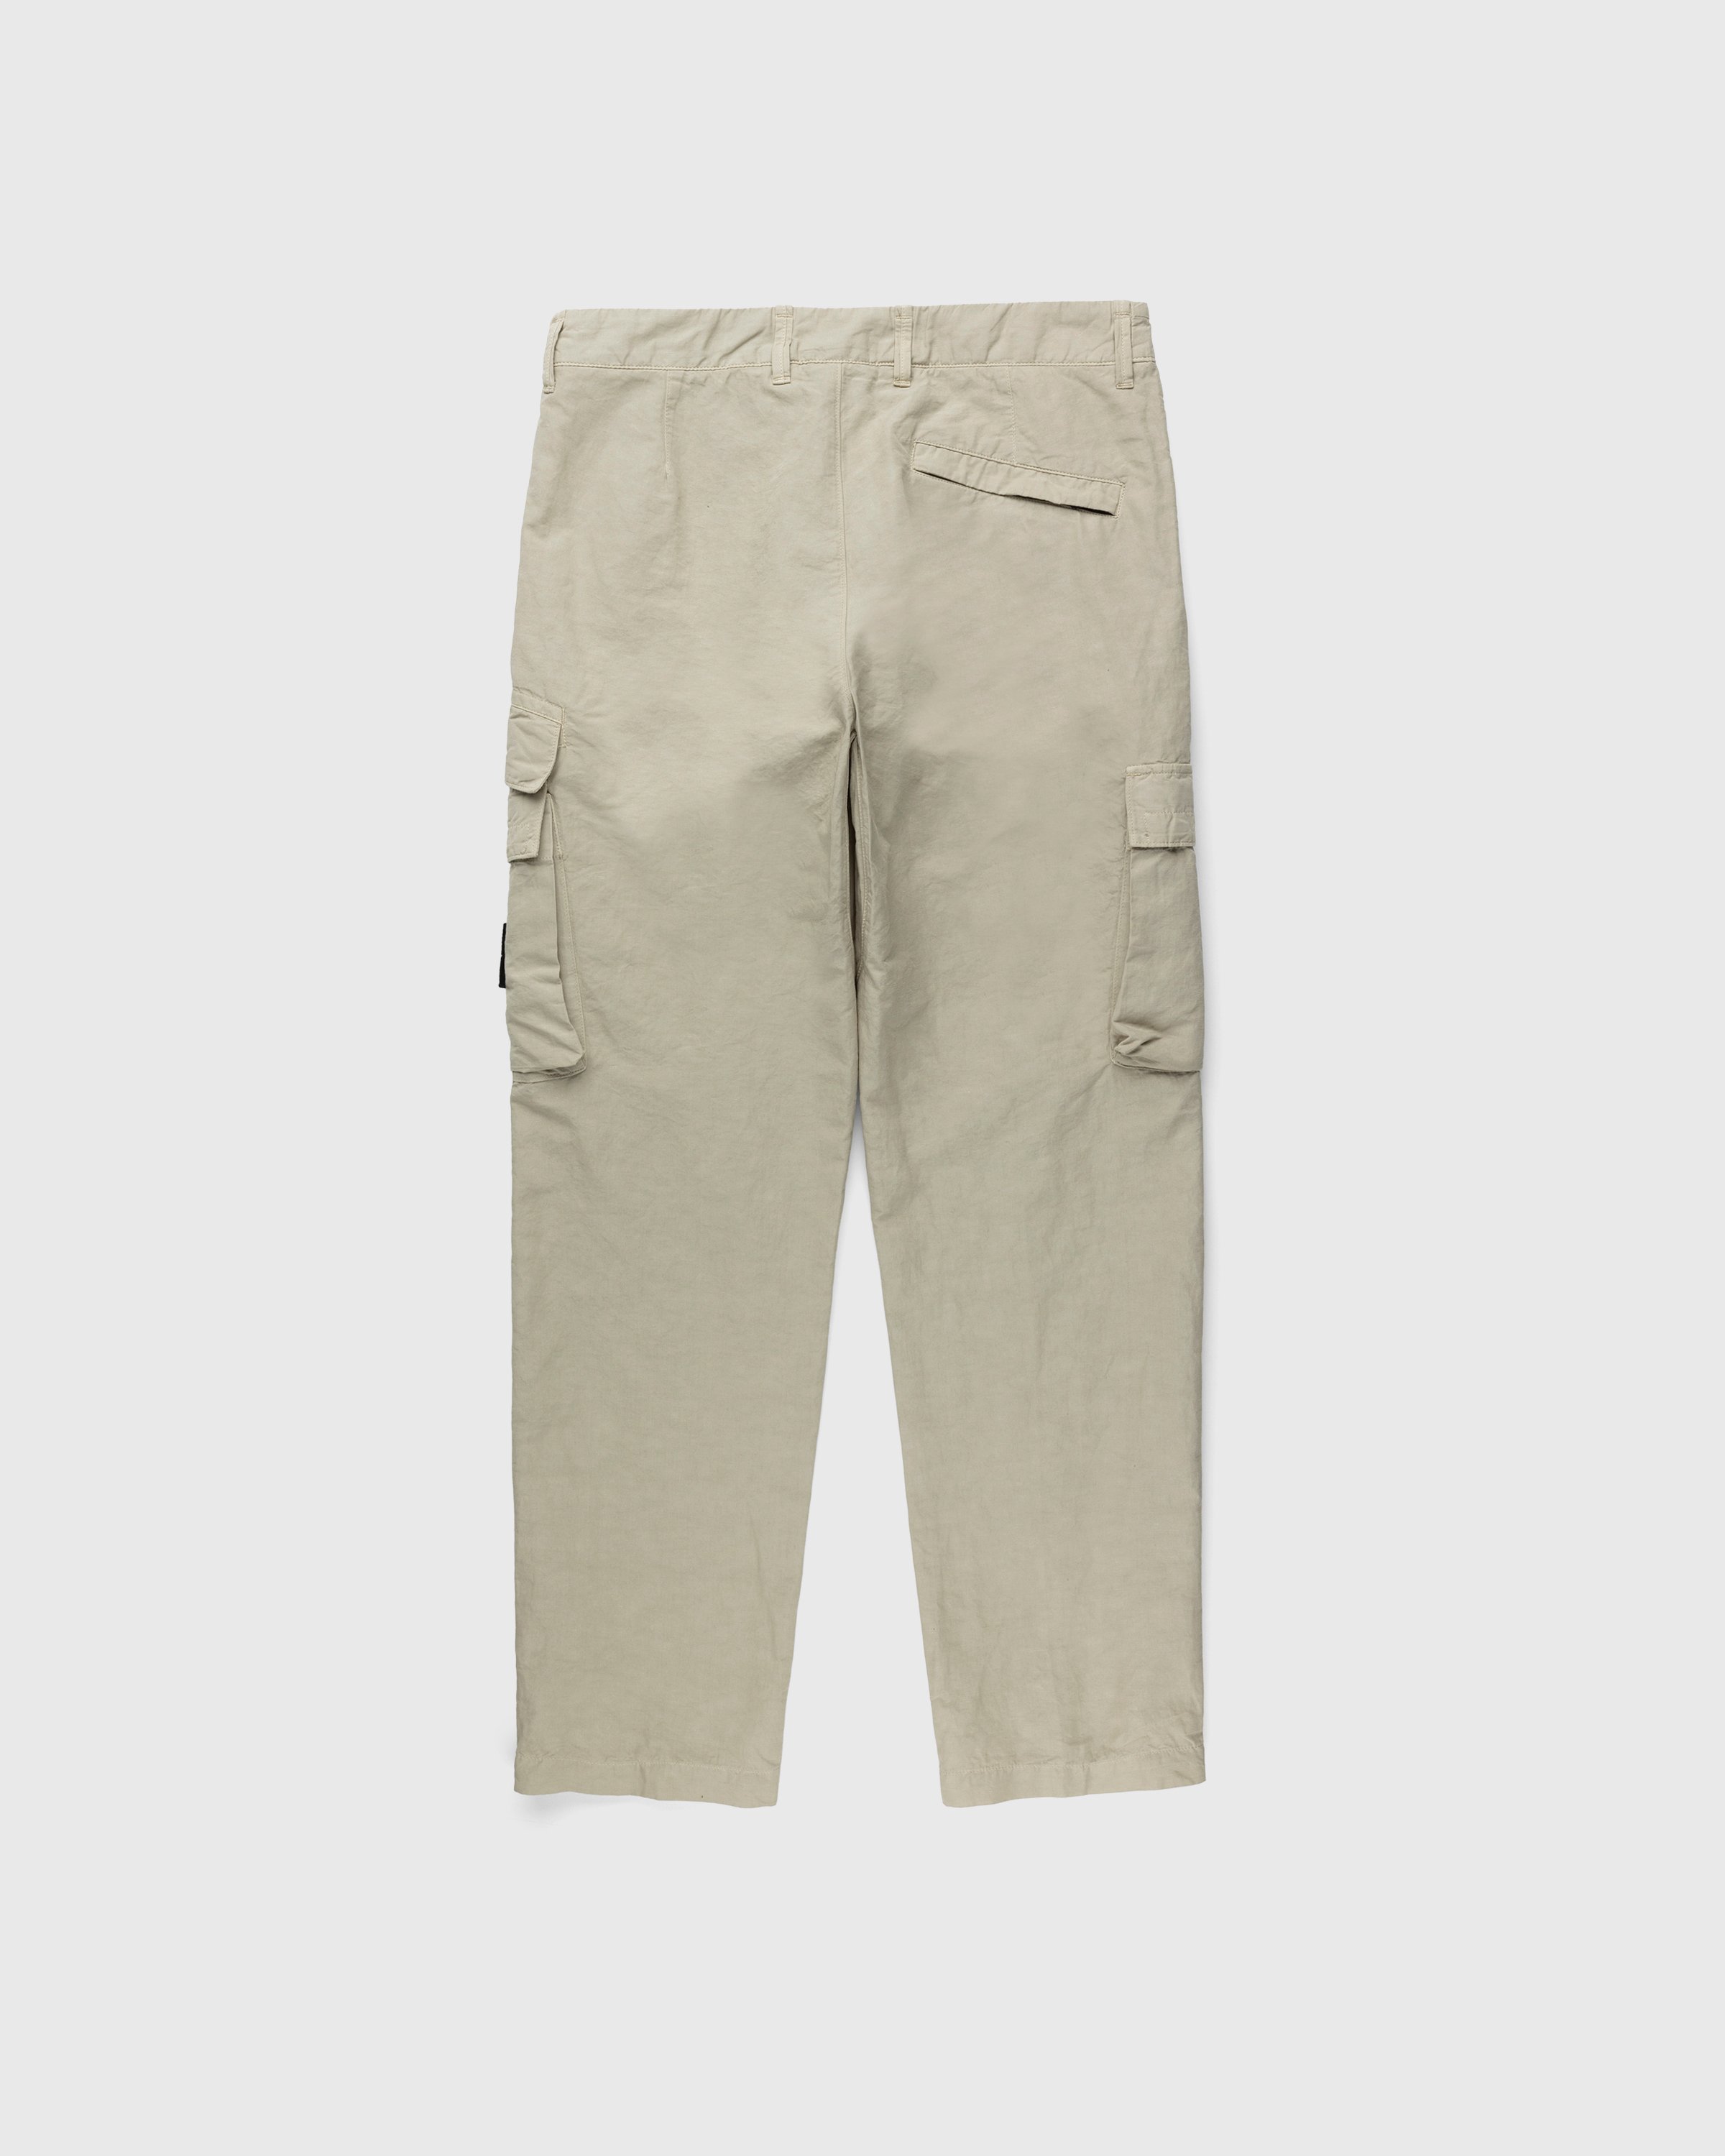 Stone Island - 31706 Garment-Dyed Cargo Pants Khaki - Clothing - Beige - Image 2